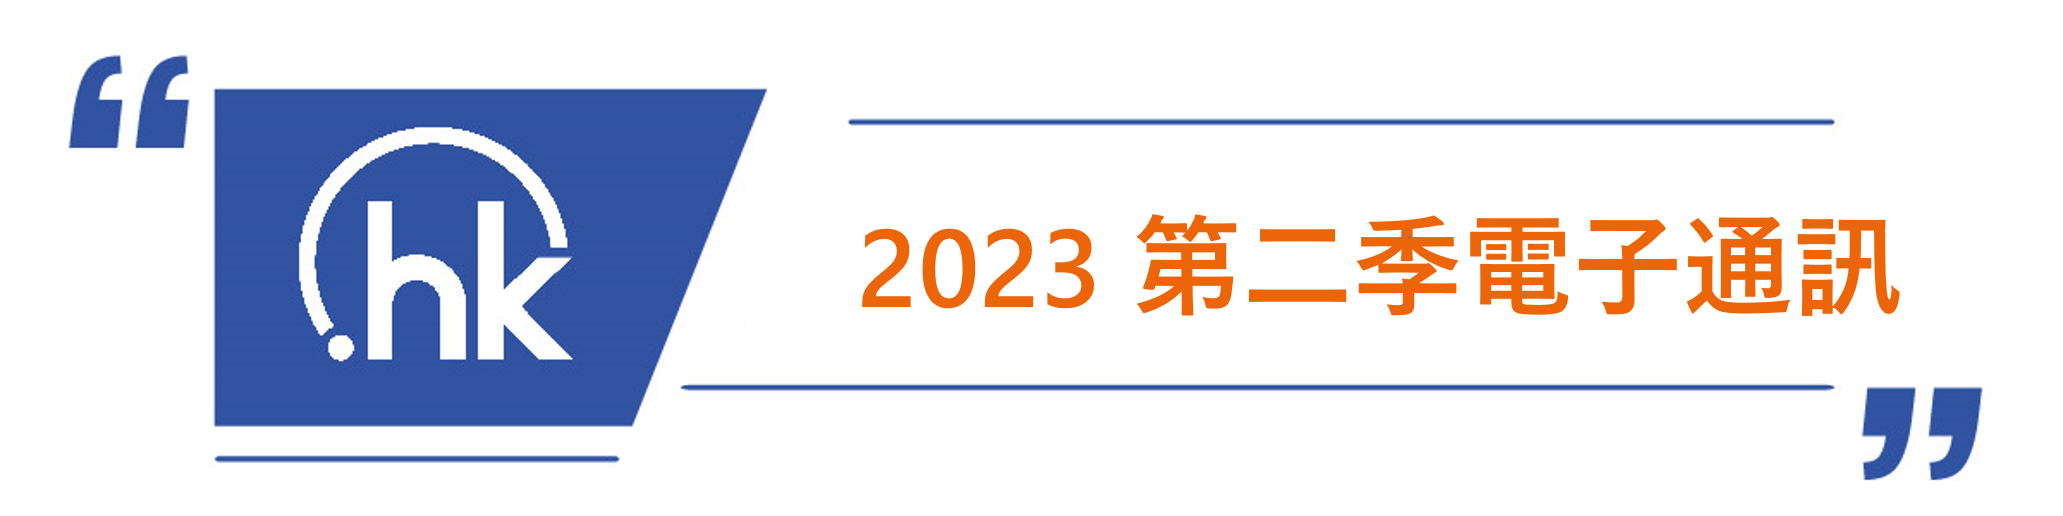 2023q2 - zh